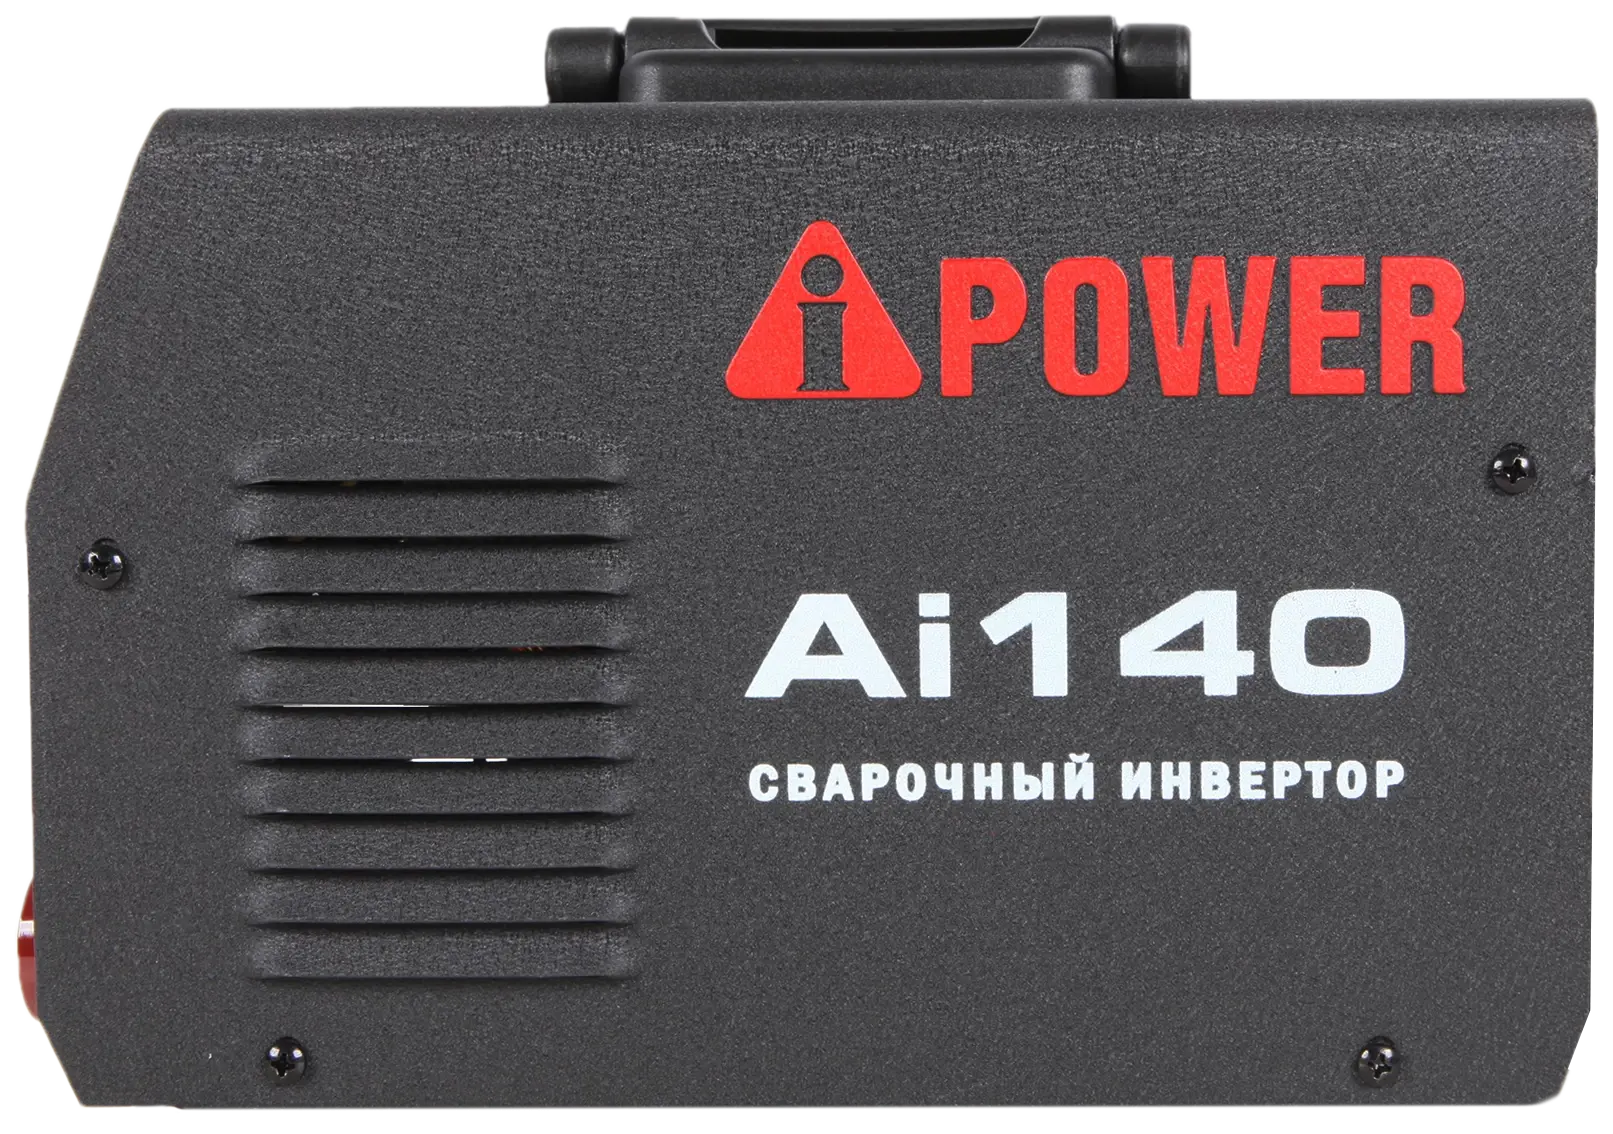 Инверторный сварочный аппарат A-IPOWER AI140 Гарантия 4 года Официальный магазин